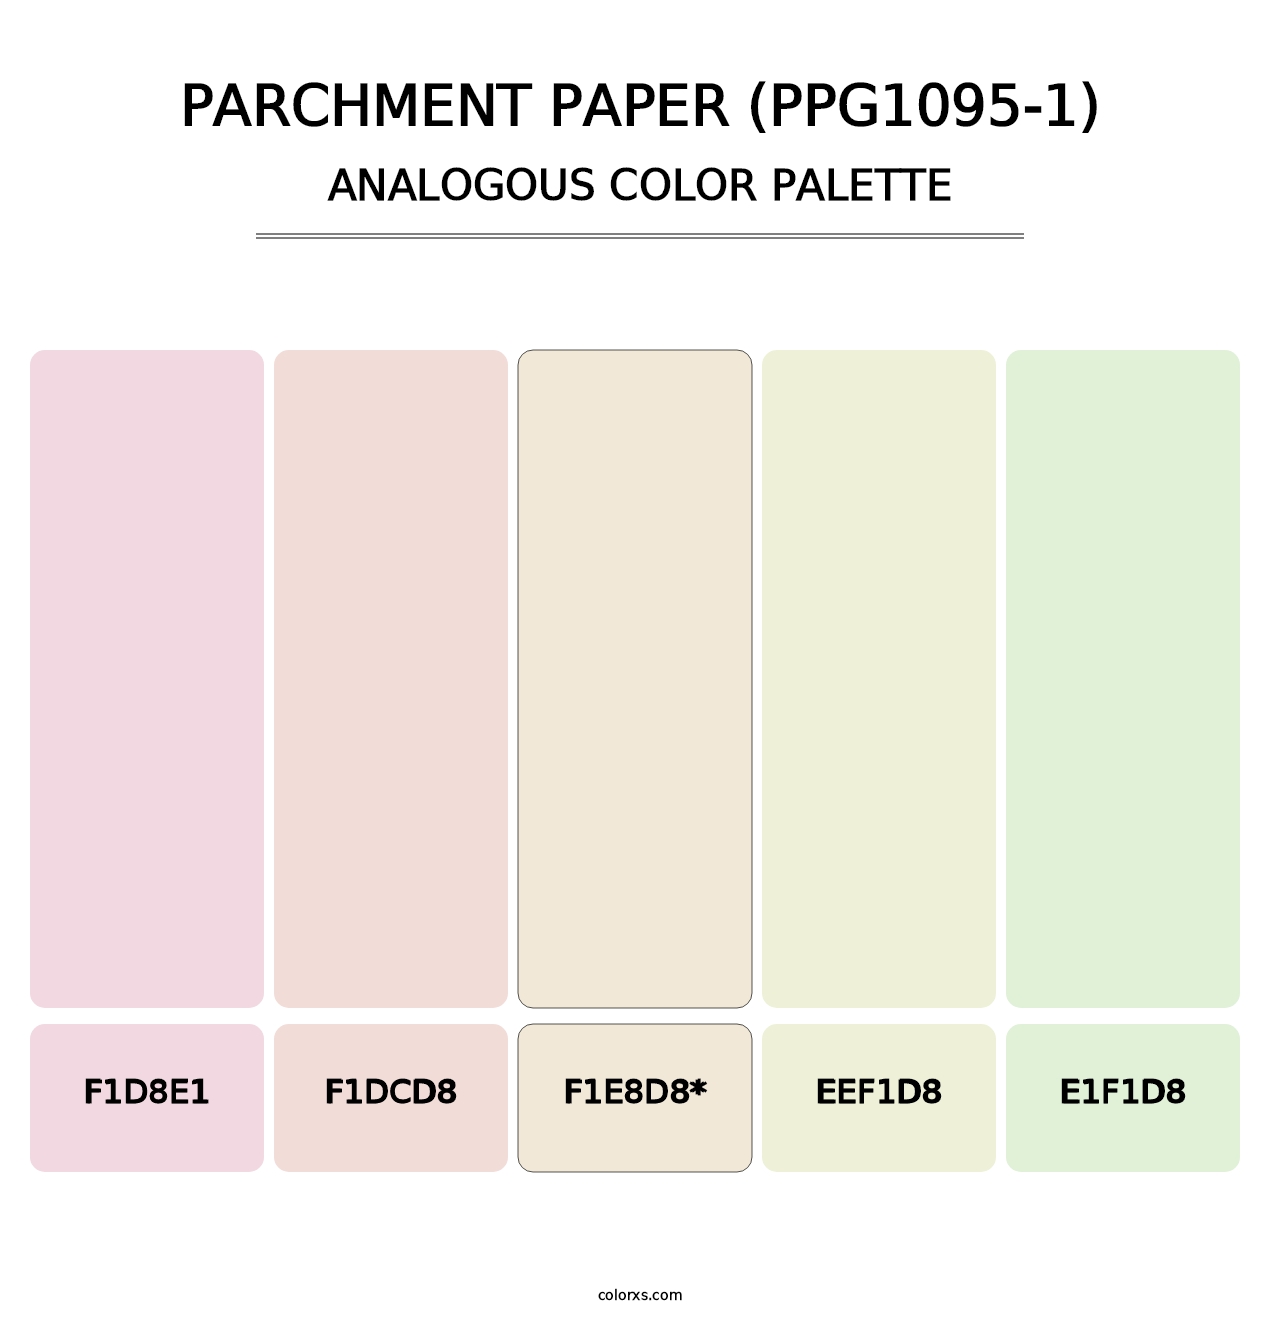 Parchment Paper (PPG1095-1) - Analogous Color Palette